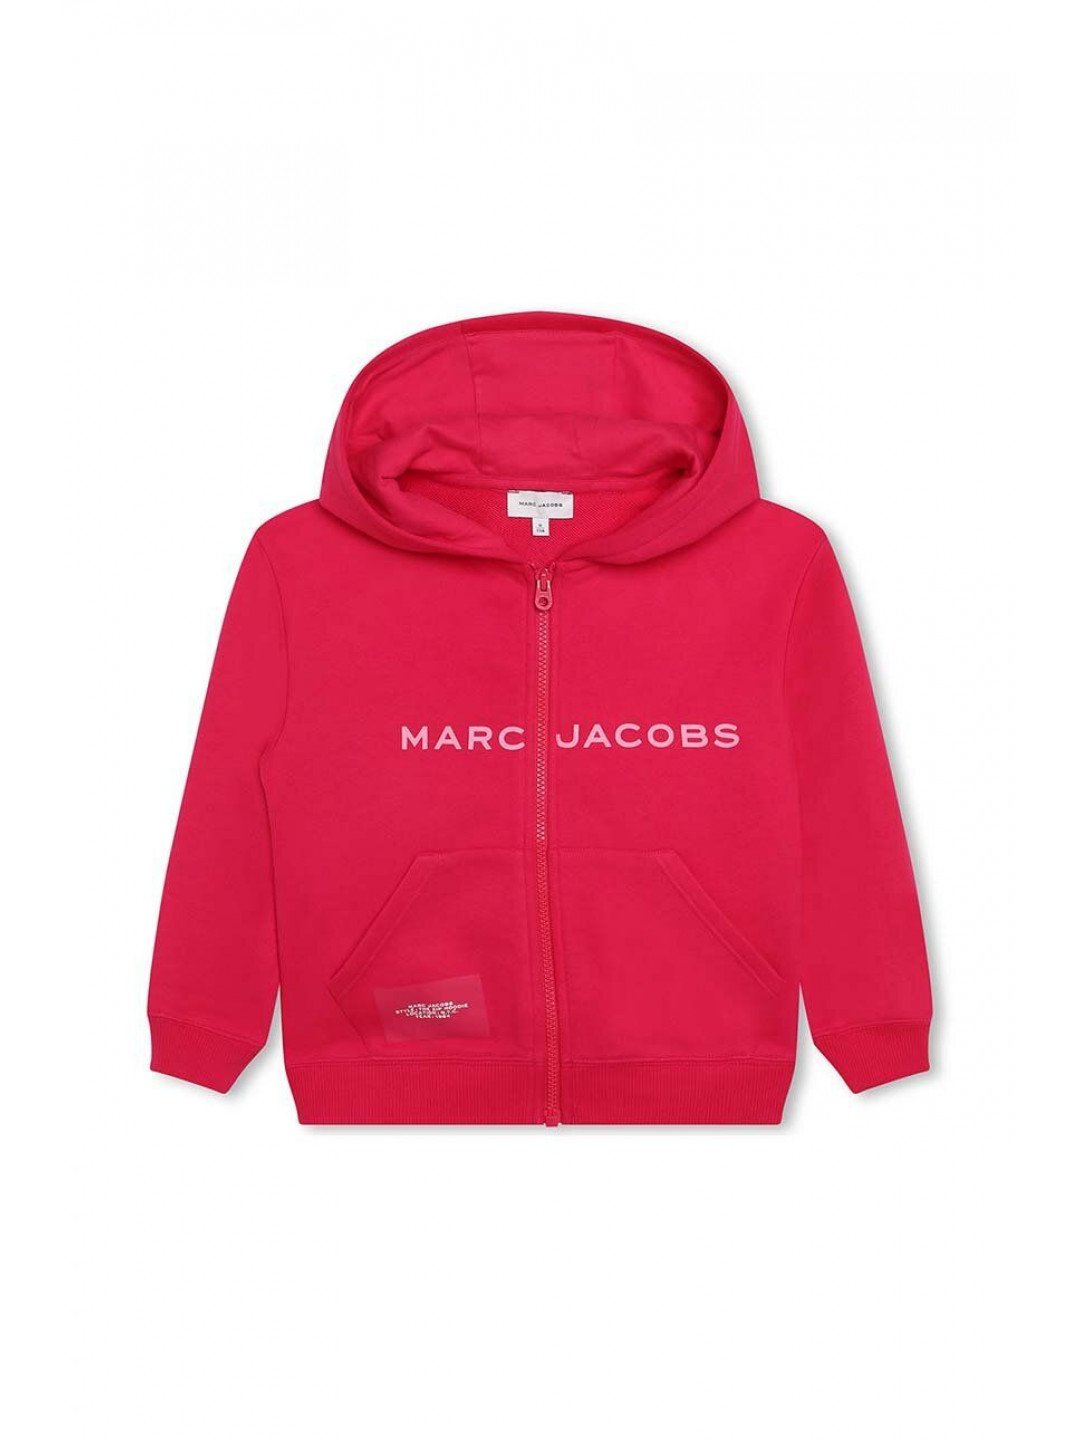 Dětská mikina Marc Jacobs červená barva s kapucí s potiskem